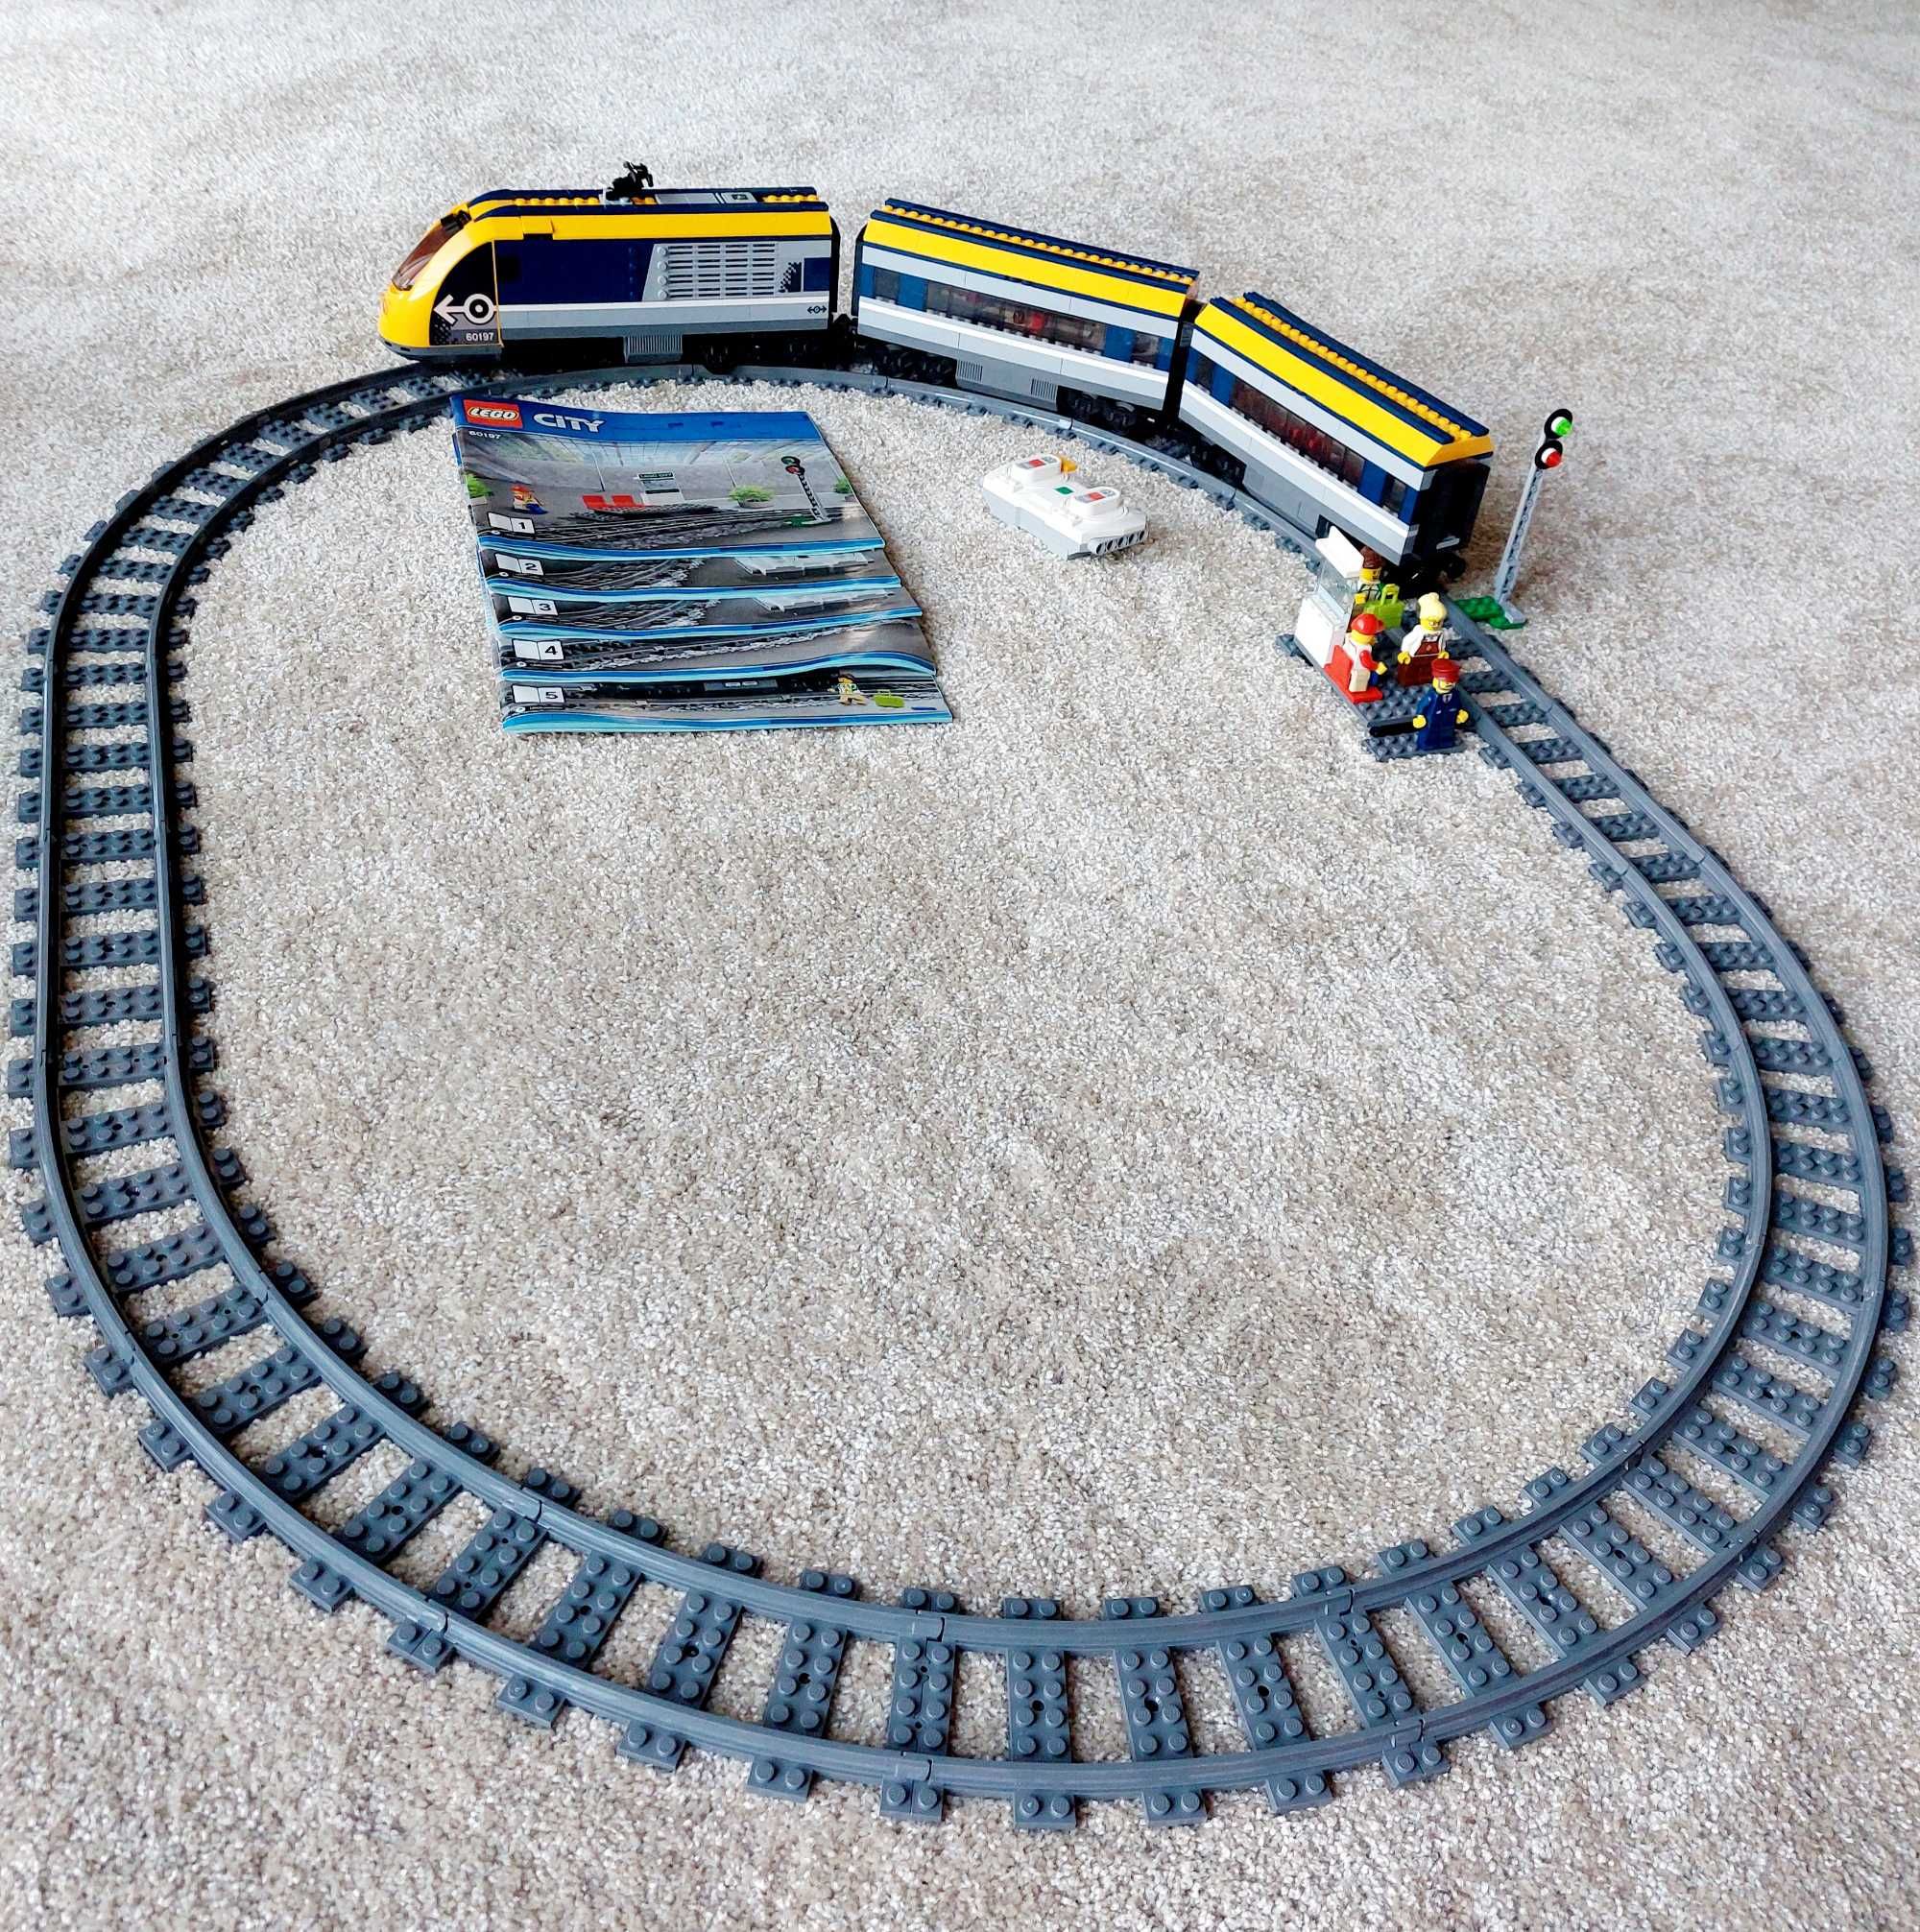 LEGO City - Tren de calatori 60197, 677 piese